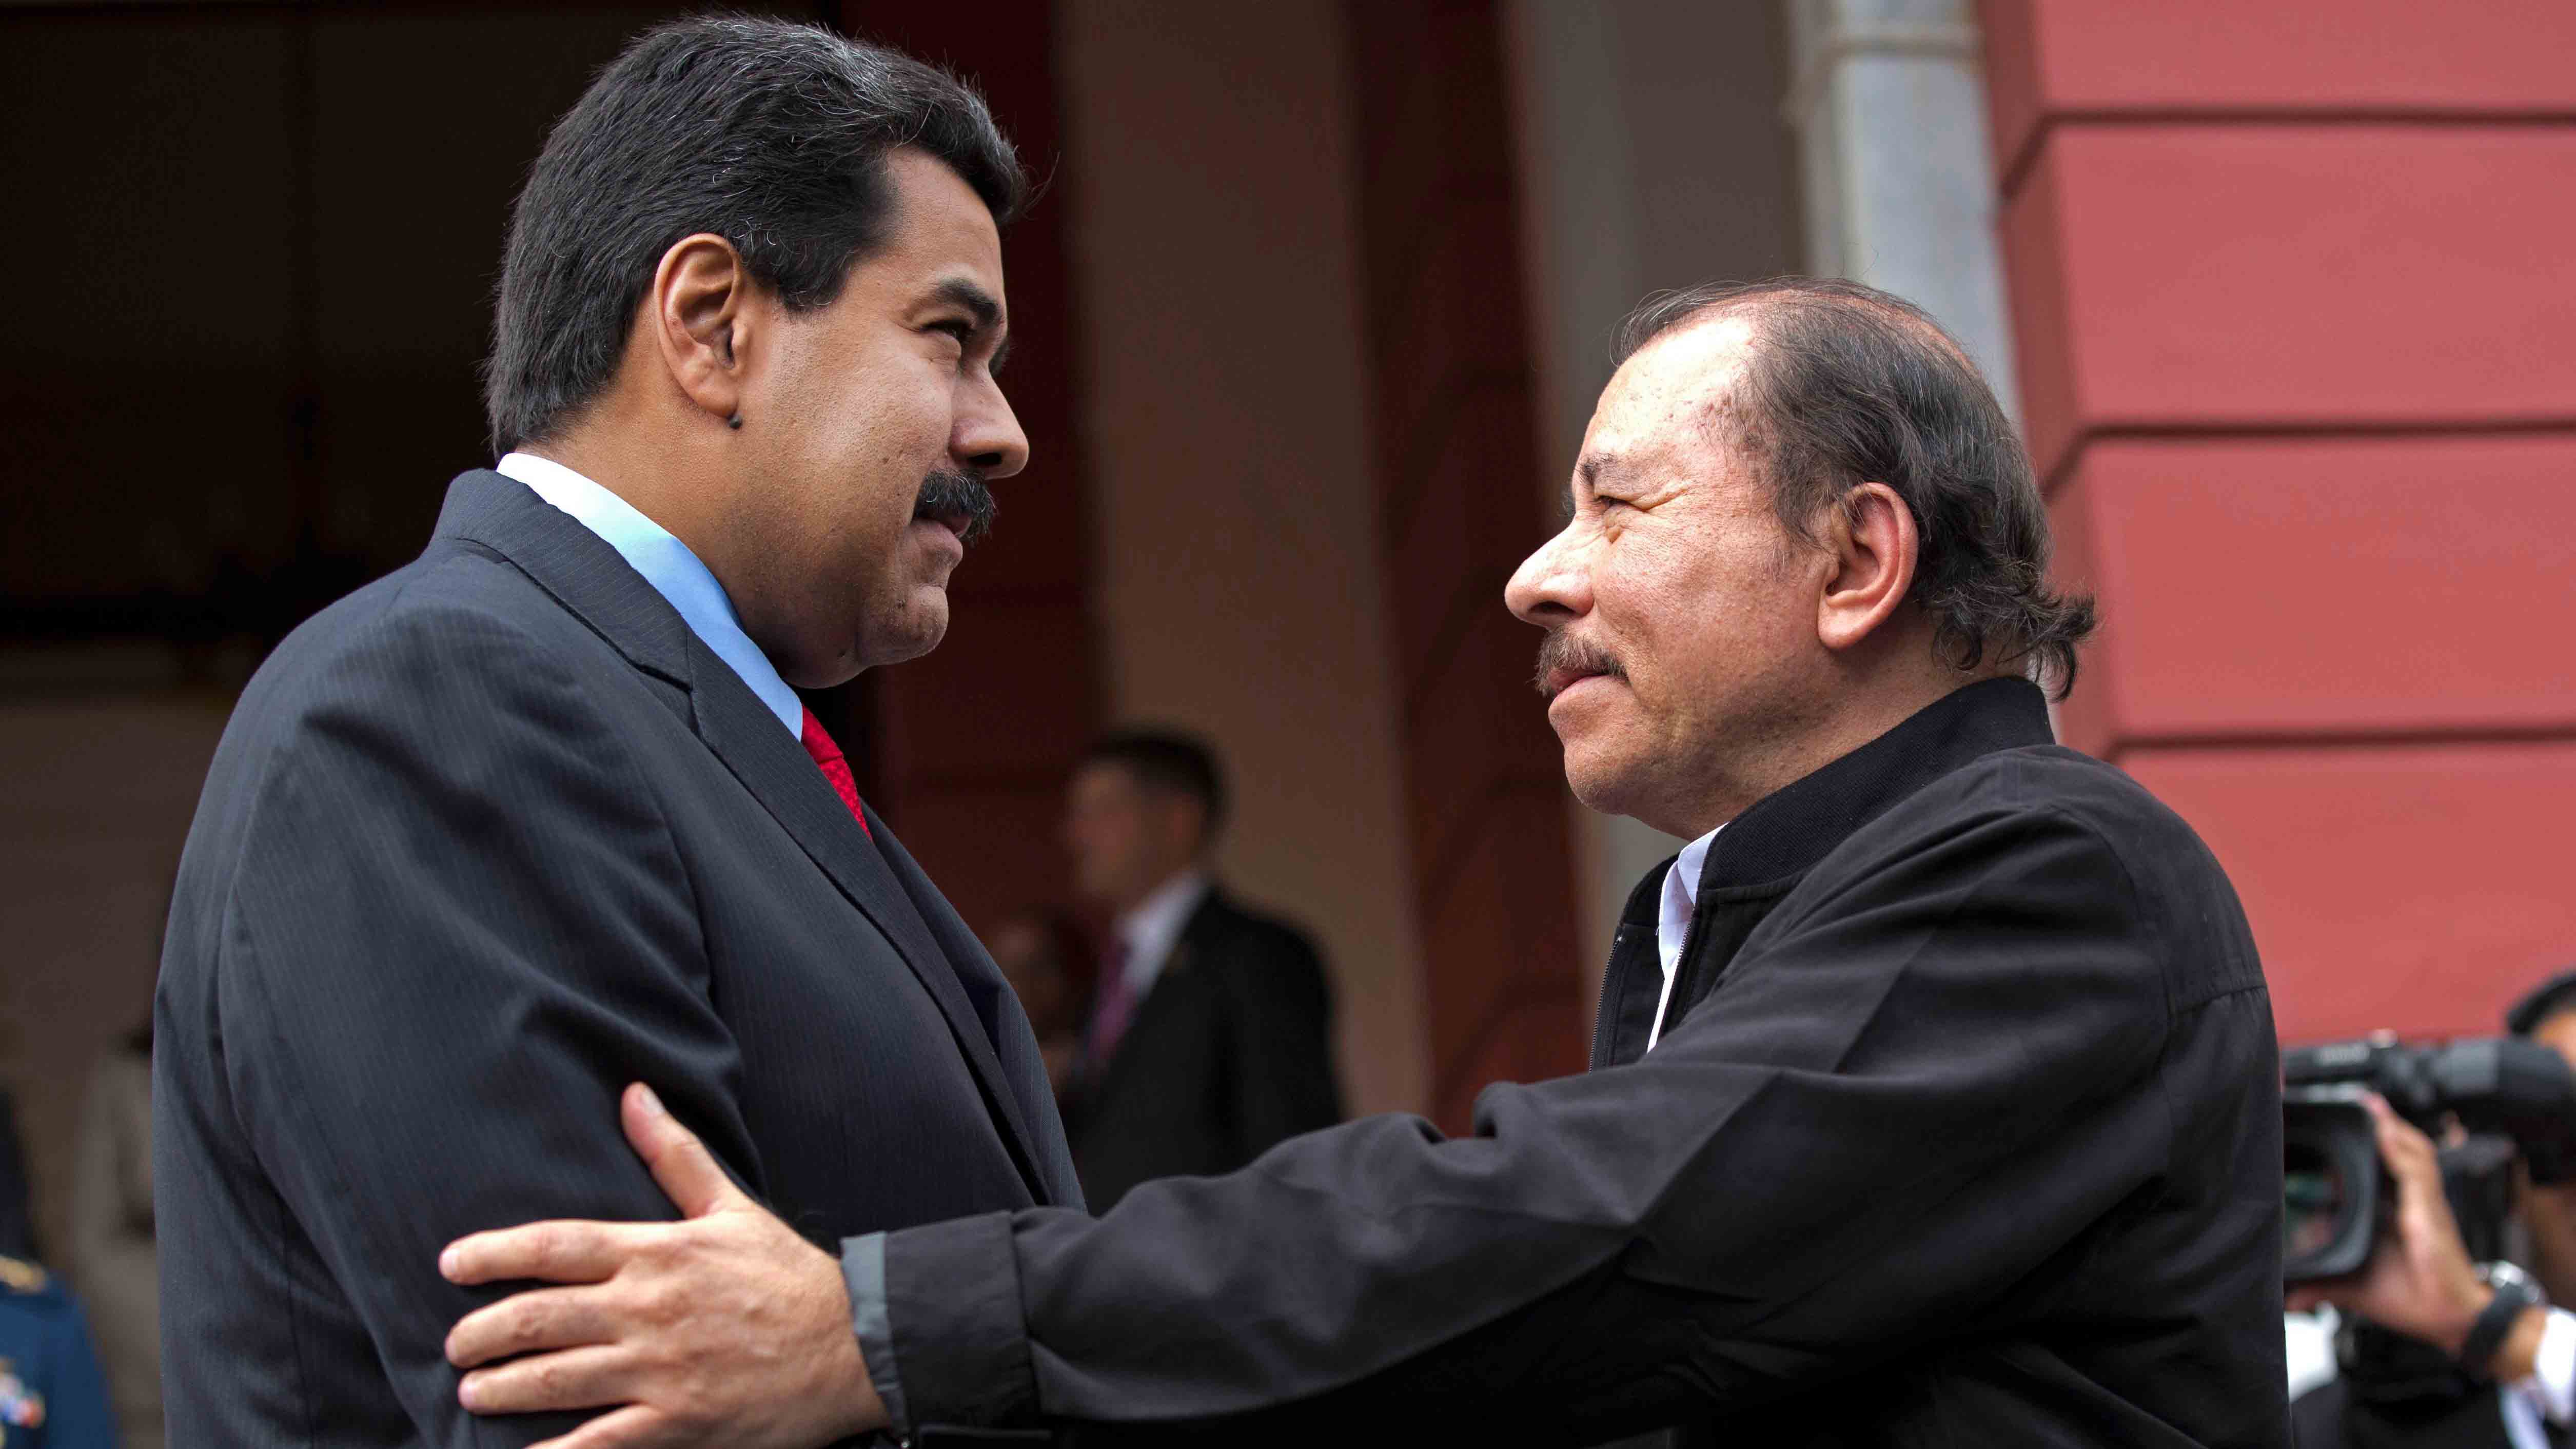 El genocida Daniel Ortega “indignado” con los “terroristas” de Venezuela